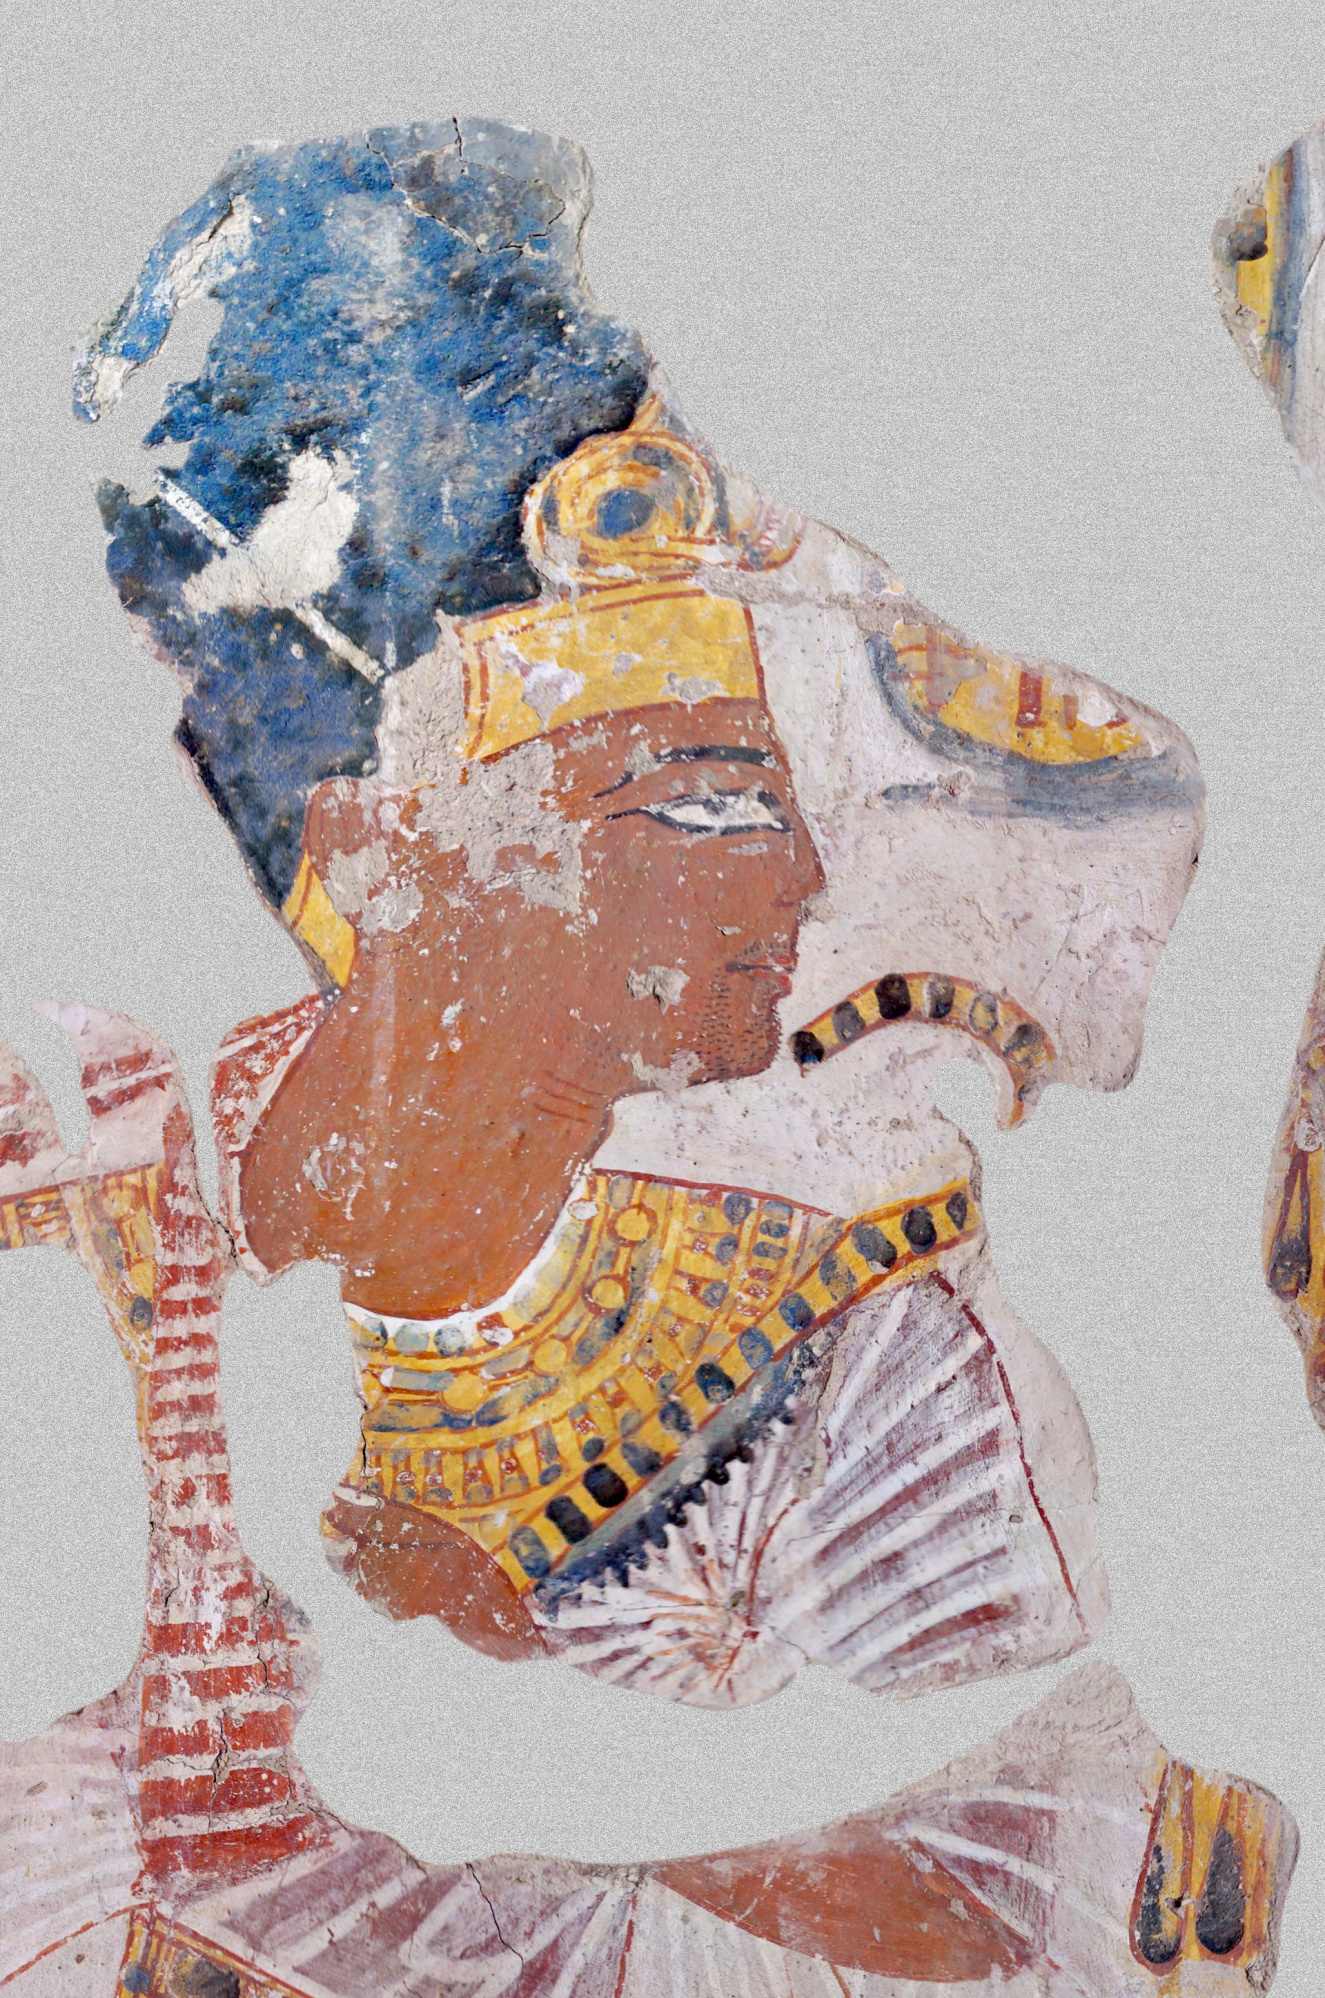 ನಖ್ತಮುನ್ ಸಮಾಧಿಯಲ್ಲಿರುವ ರಾಮ್ಸೆಸ್ II ರ ಭಾವಚಿತ್ರ, ರಾಮೆಸ್ಸಿಯಮ್ನಲ್ಲಿನ ಬಲಿಪೀಠದ ಮುಖ್ಯಸ್ಥ (ಟಿಟಿ 341 ಸಮಾಧಿ, ಬಹುಶಃ 20 ನೇ ರಾಜವಂಶ, ಸುಮಾರು 1100 BCE).